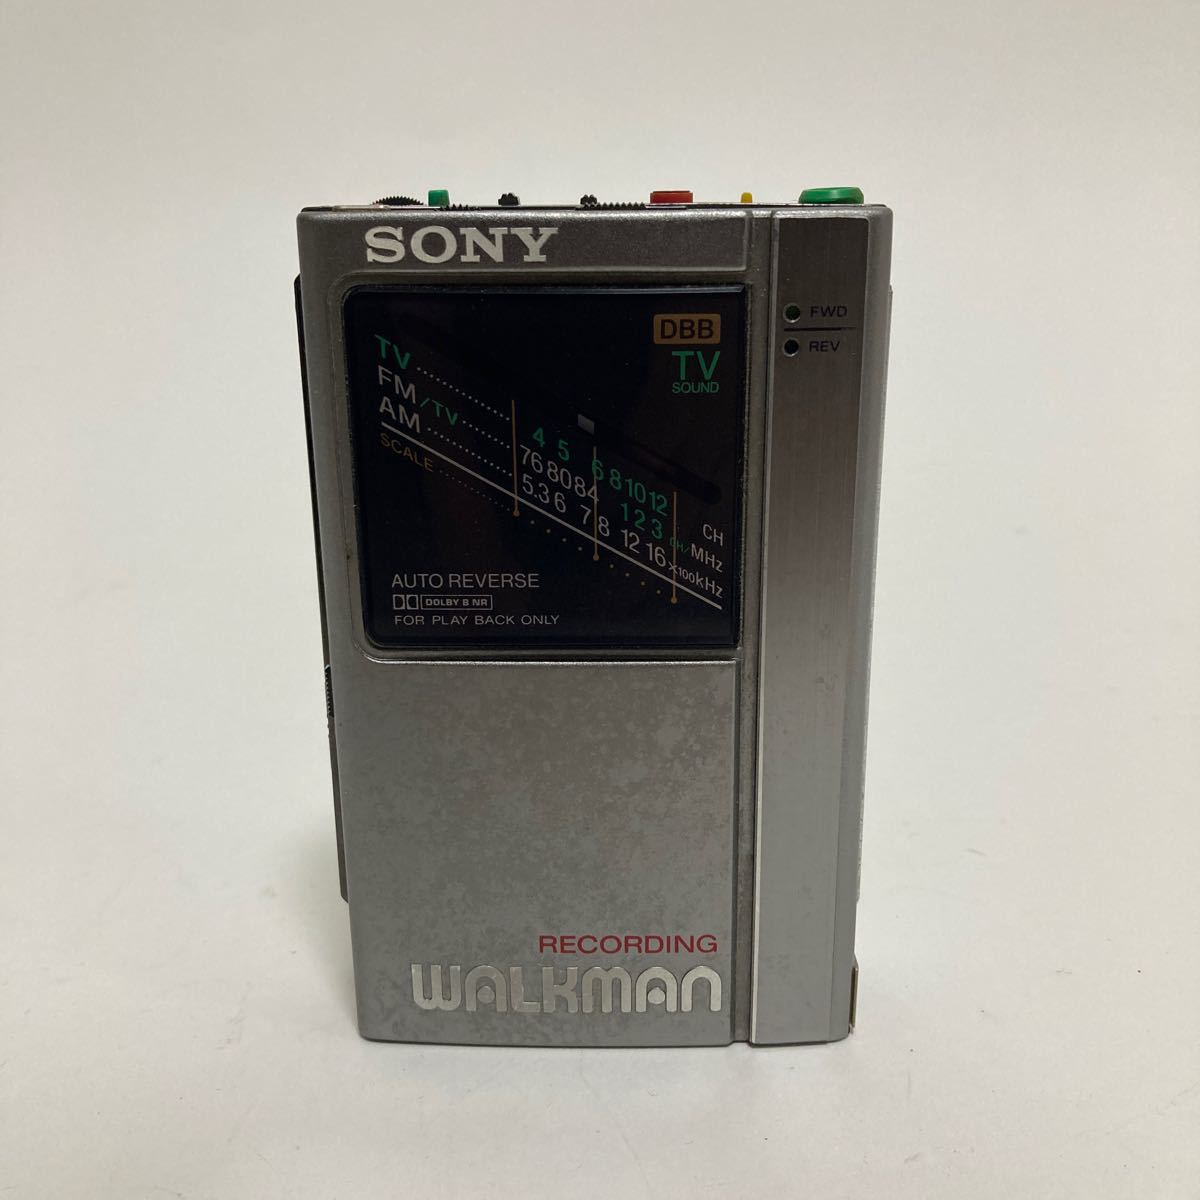 Sony SONY WALKMAN WM-F404 cassette Walkman : Real Yahoo auction